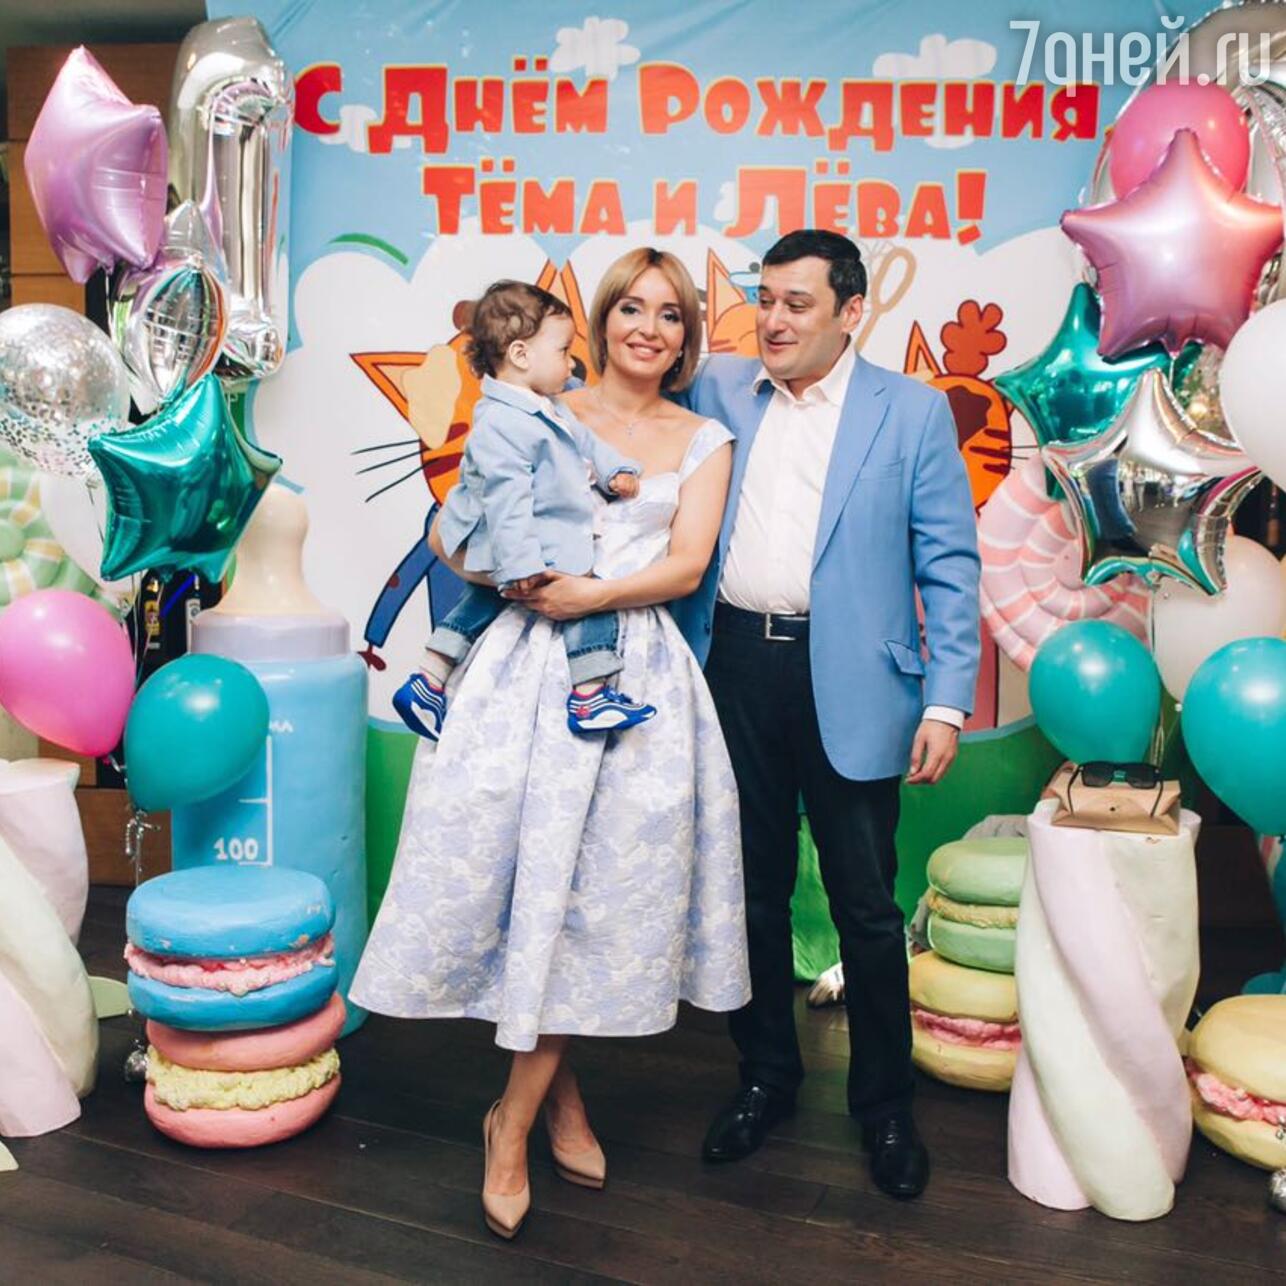 Поля Полякова отметила совместный день рождения двух сыновей - 7Дней.ру